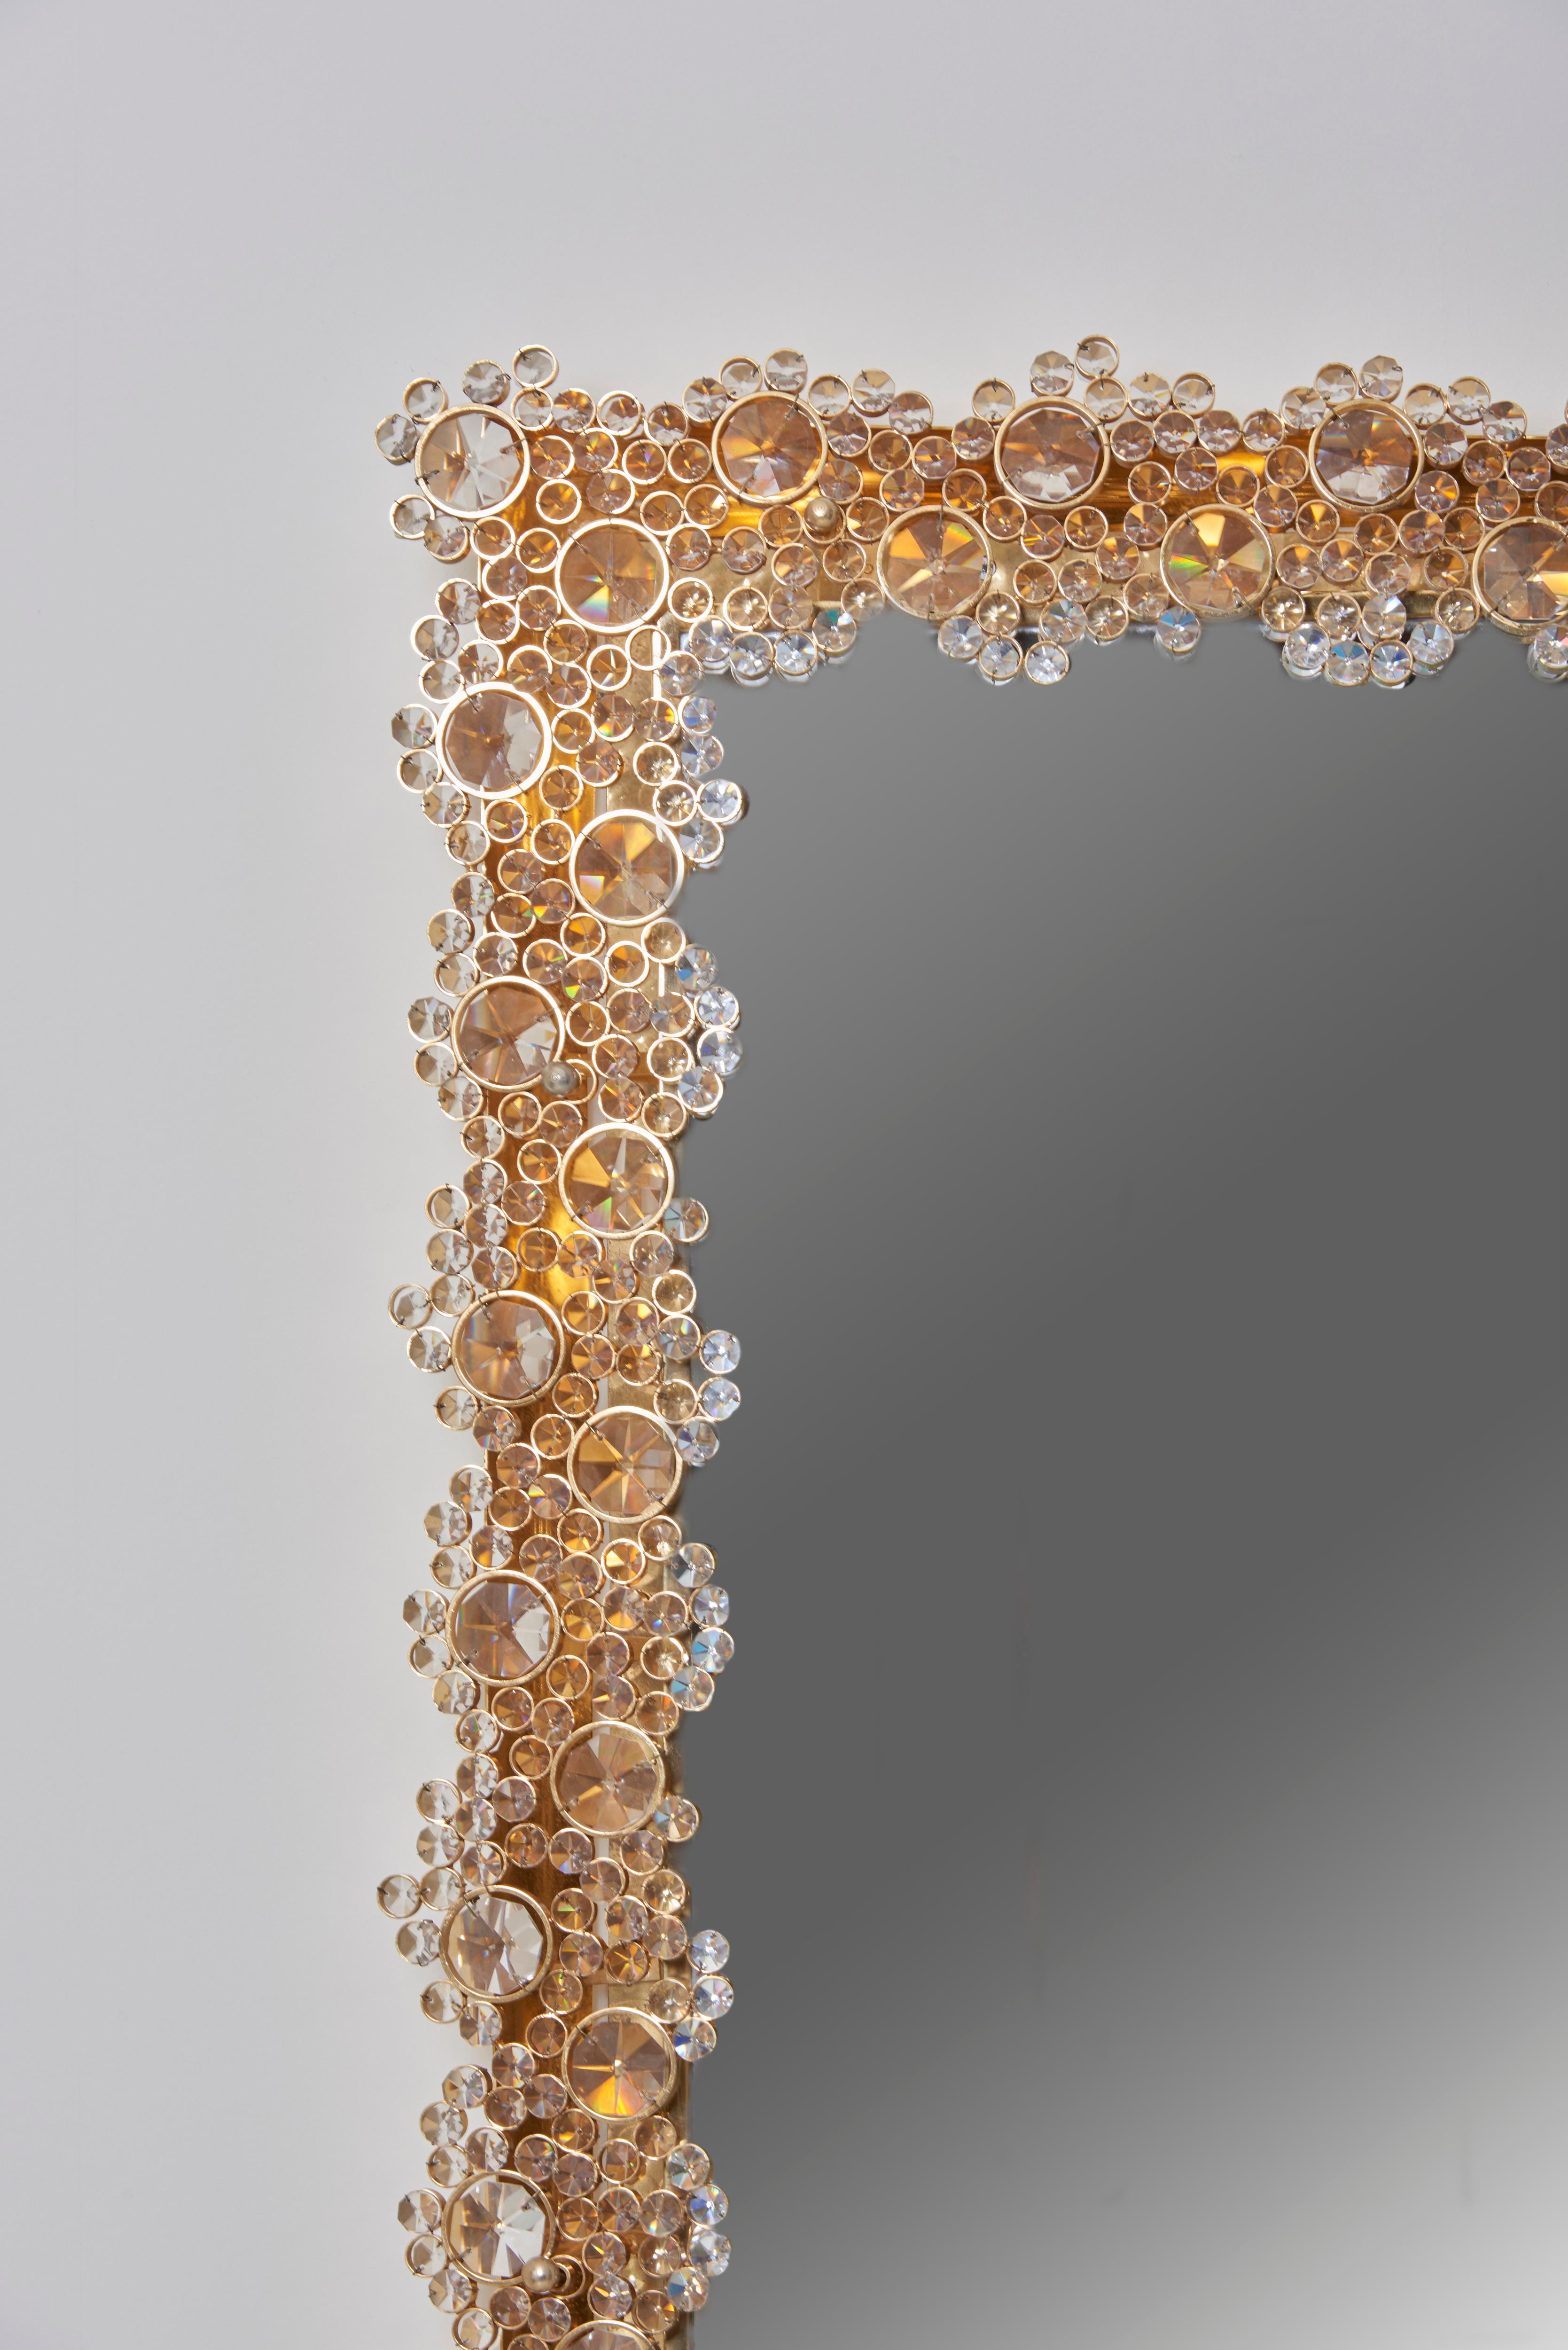 Hervorragender beleuchteter Spiegel, Modell S100W von Palwa.
Hergestellt aus vergoldetem Metall und Kristallglas.
28 x E14-Glühbirnen.

Wir haben auch einen passenden runden Spiegel auf Lager